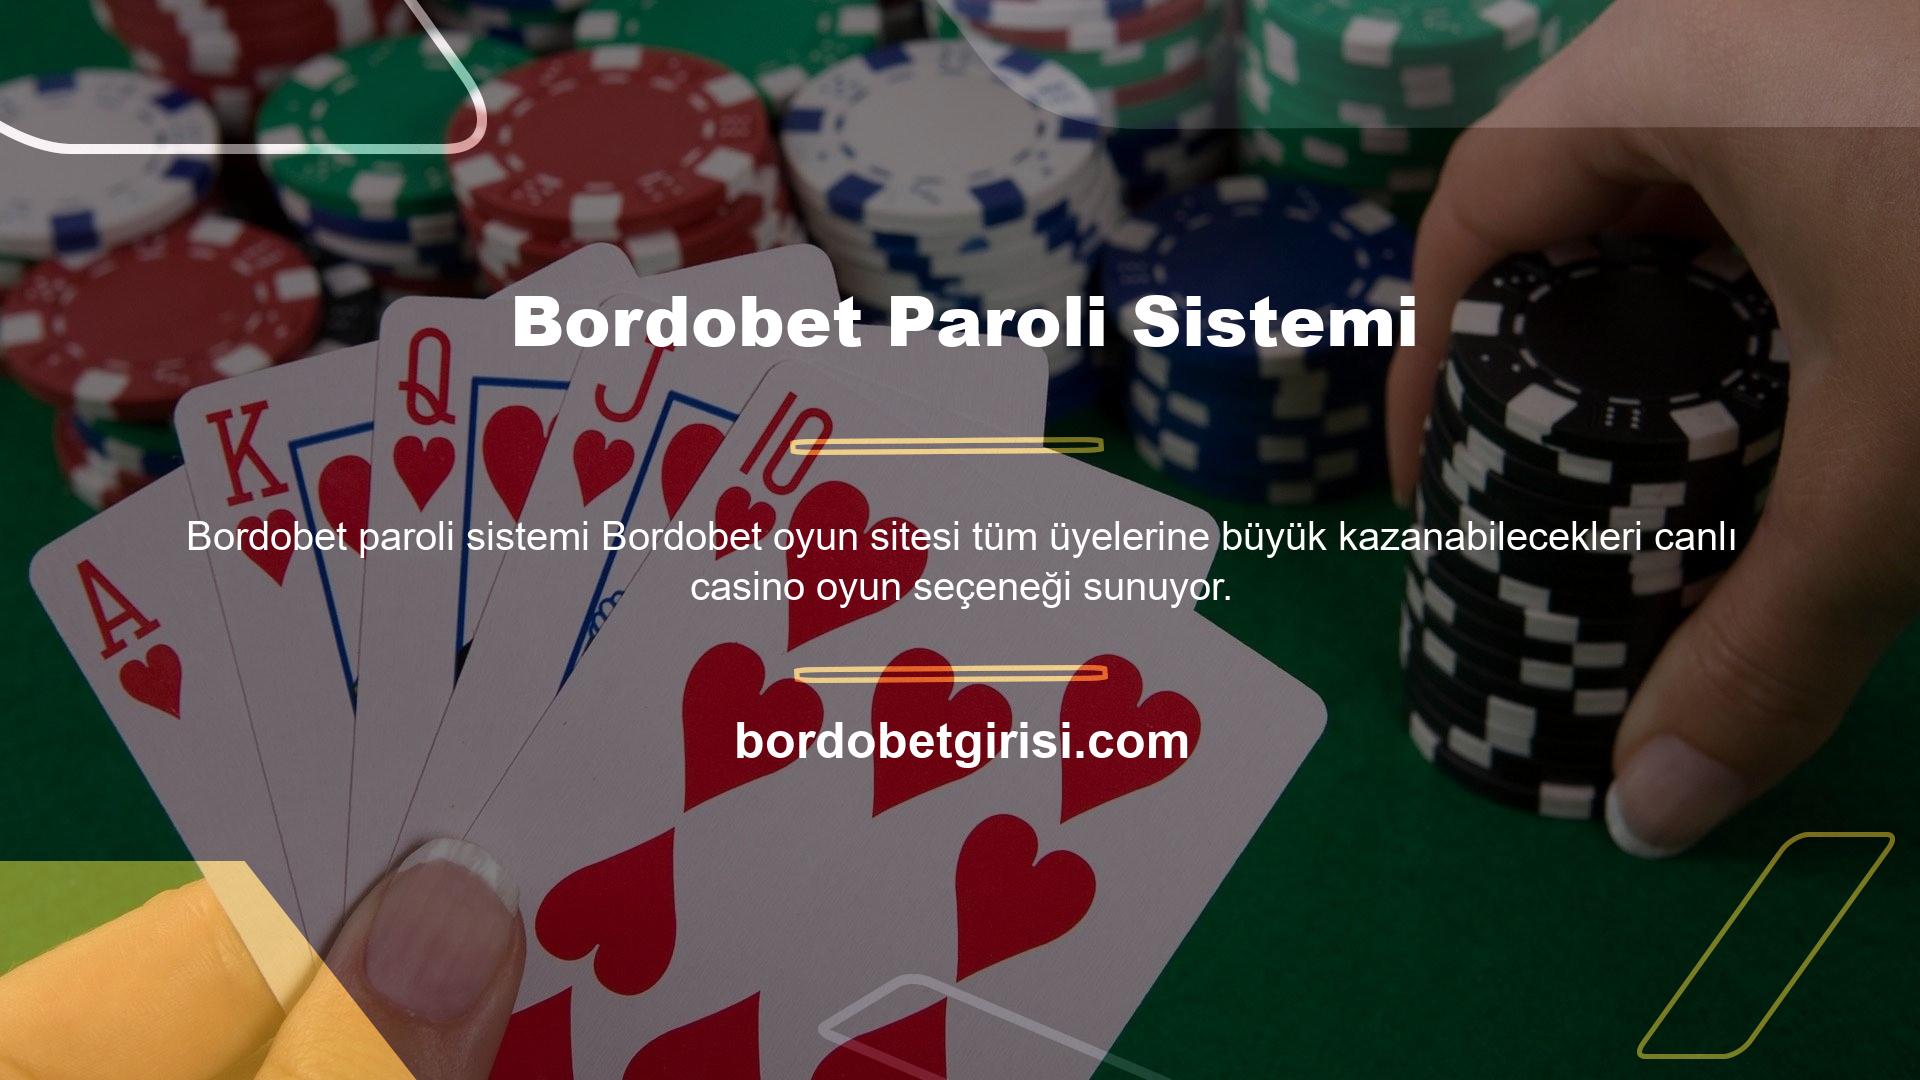 Paroli sistemi blackjack oyunlarında daha yaygın olarak kullanılan sistemdir ve bahis çarpma sistemi olarak bilinir